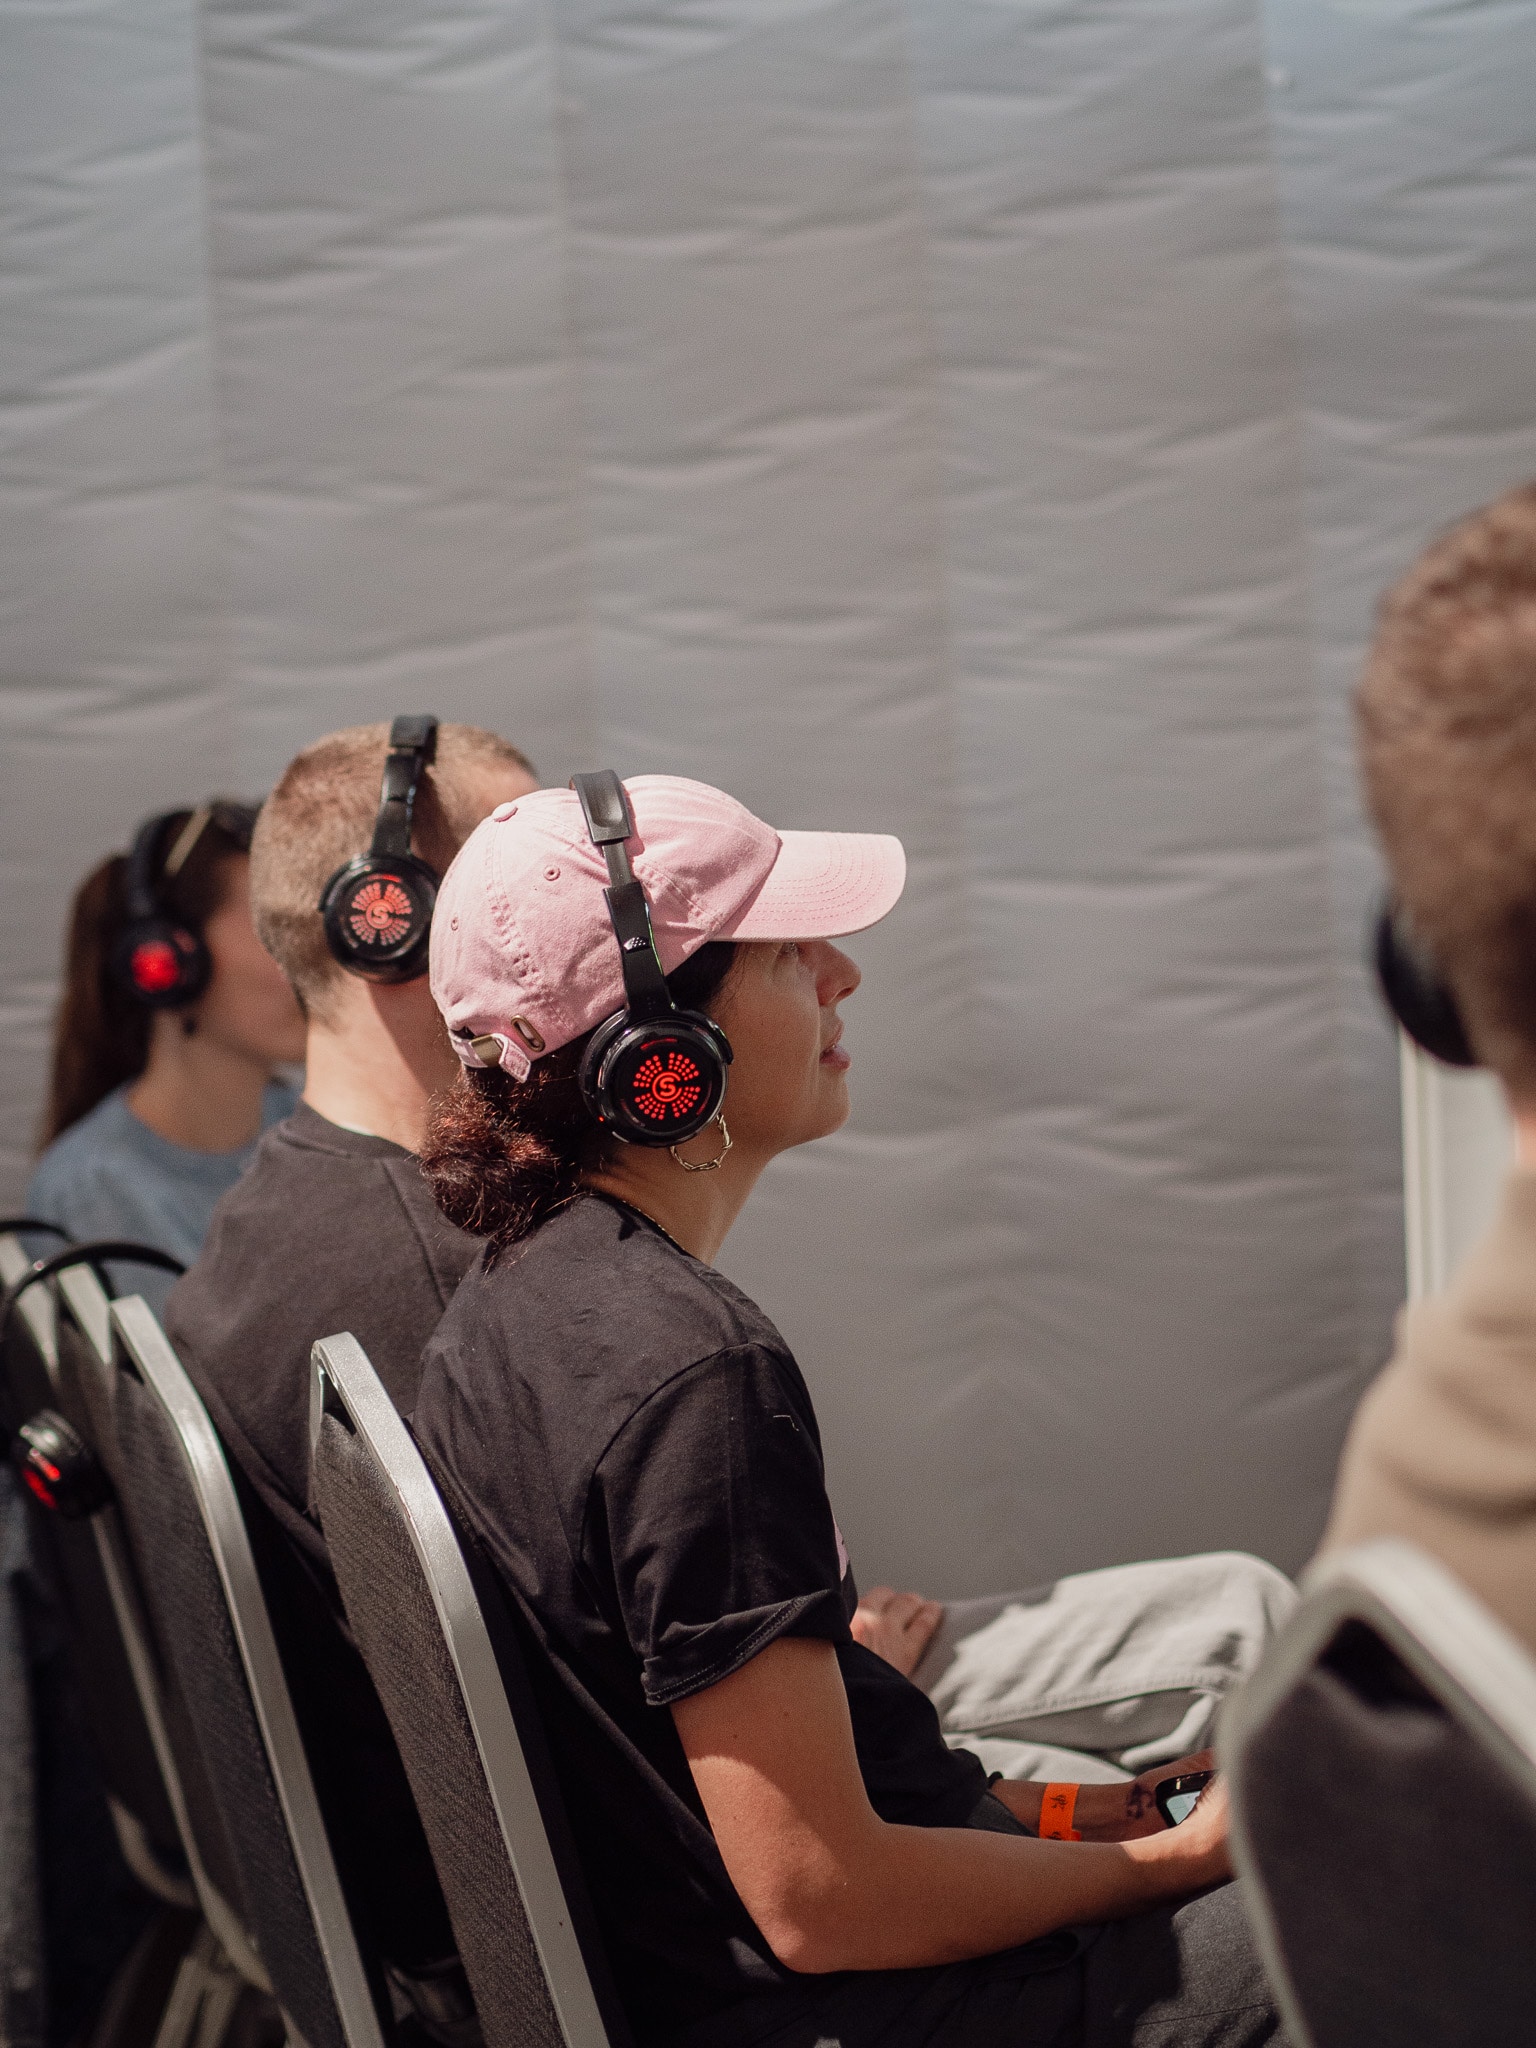 Mehrere Personen sitzen nebeneinander und tragen Kopfhörer, während sie einer Präsentation oder einem Vortrag zuhören. Im Vordergrund ist eine Frau mit einer rosa Kappe und einem schwarzen T-Shirt zu sehen.